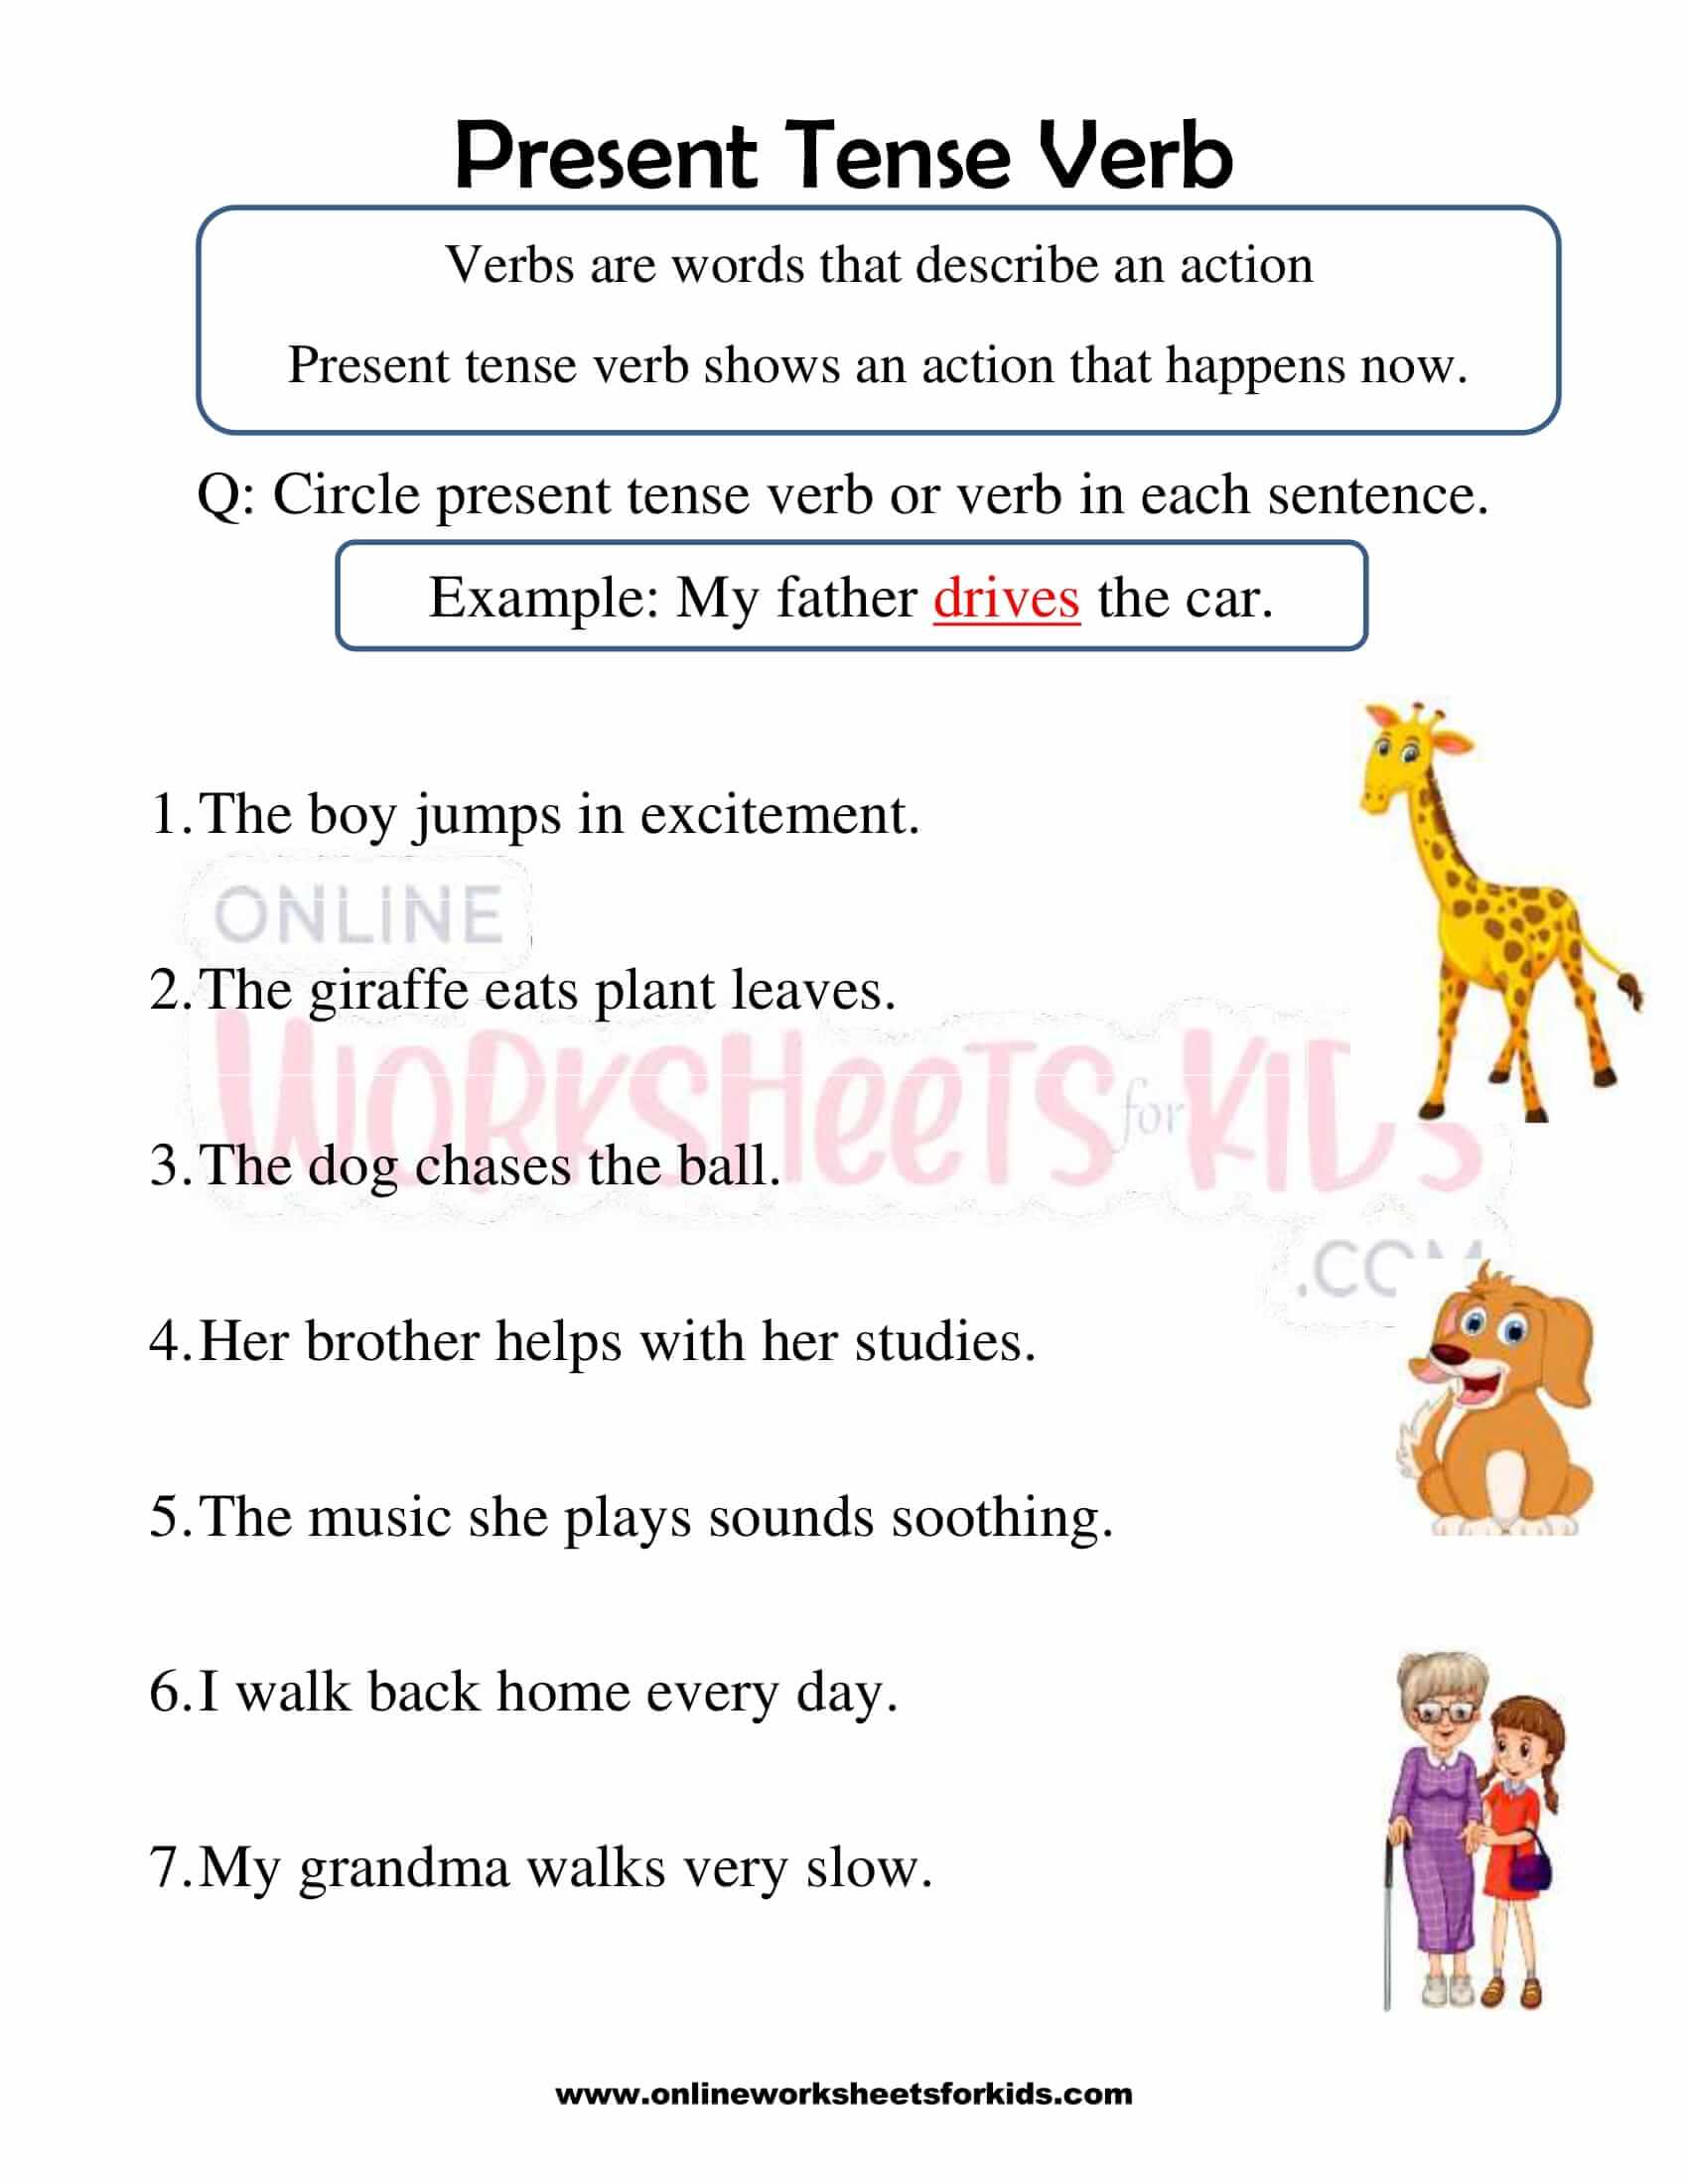 Present Tense Verbs Worksheet Grade 4